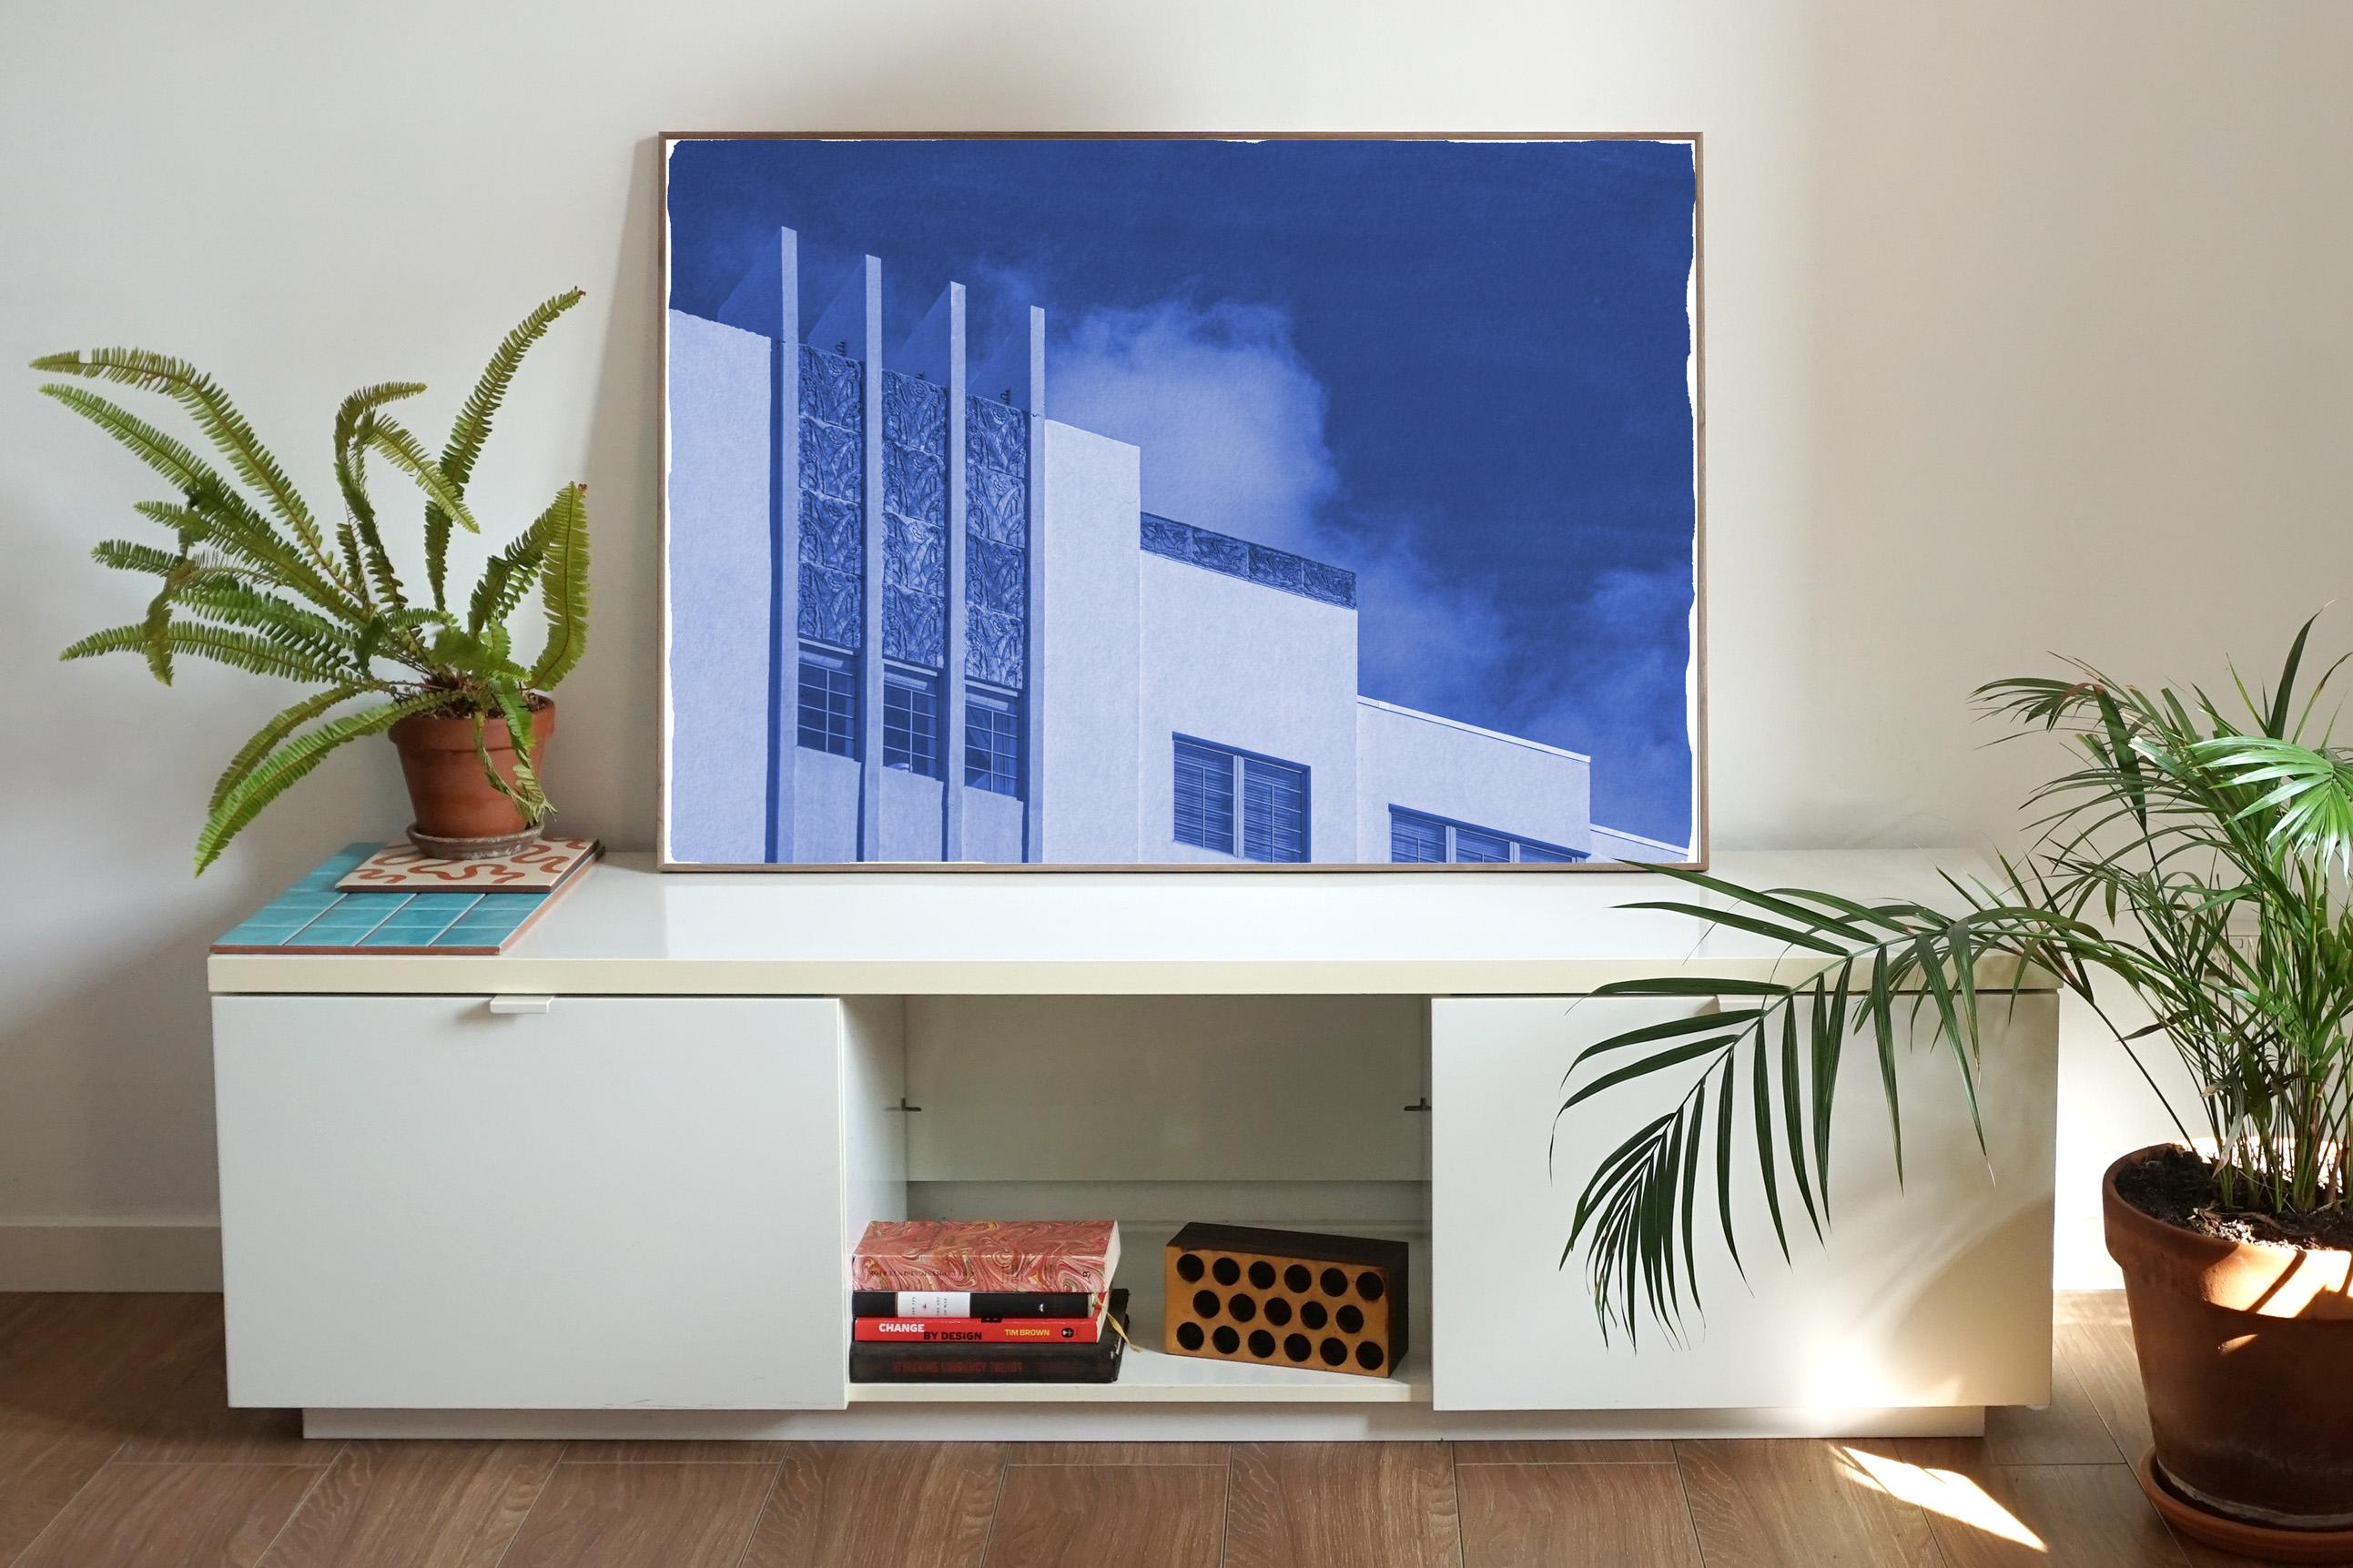 The Thirties Building with Sky, handgefertigter Zyanotyp-Druck in Blautönen, Miami-Stil (Art déco), Print, von Kind of Cyan